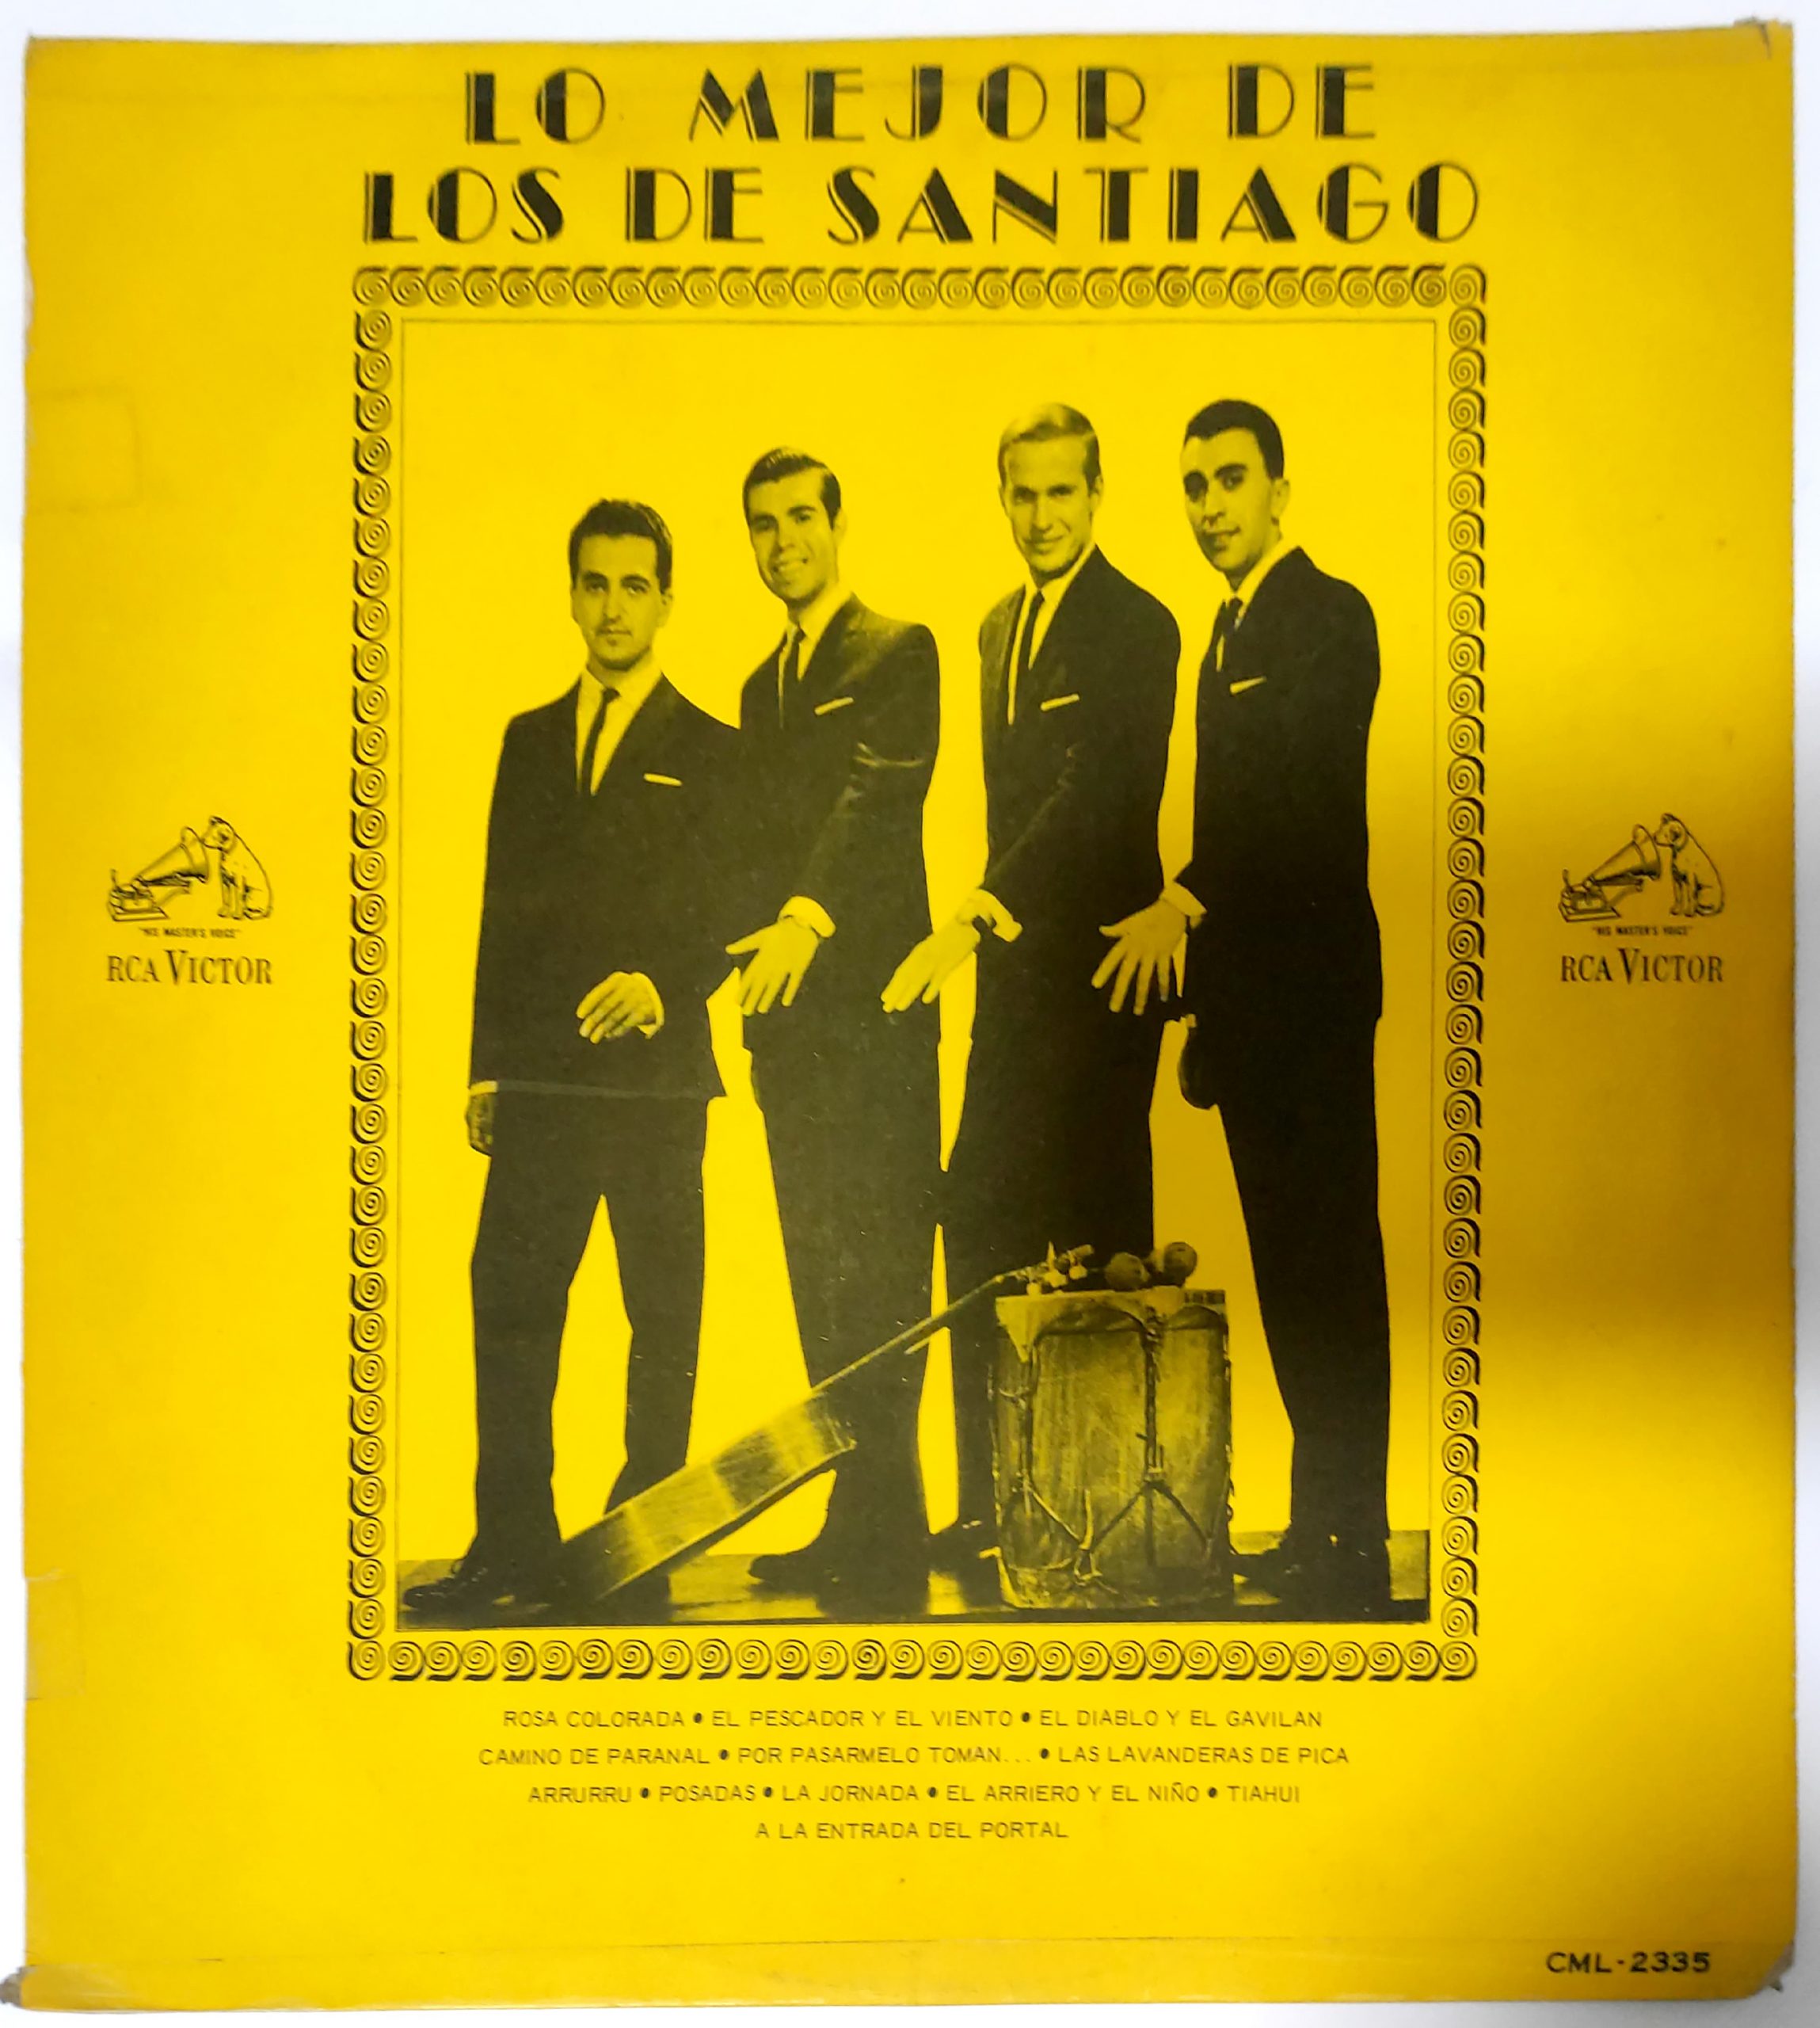 Los De Santiago – Lo Mejor De Los De Santiago Vinyl Record 1965 Chile